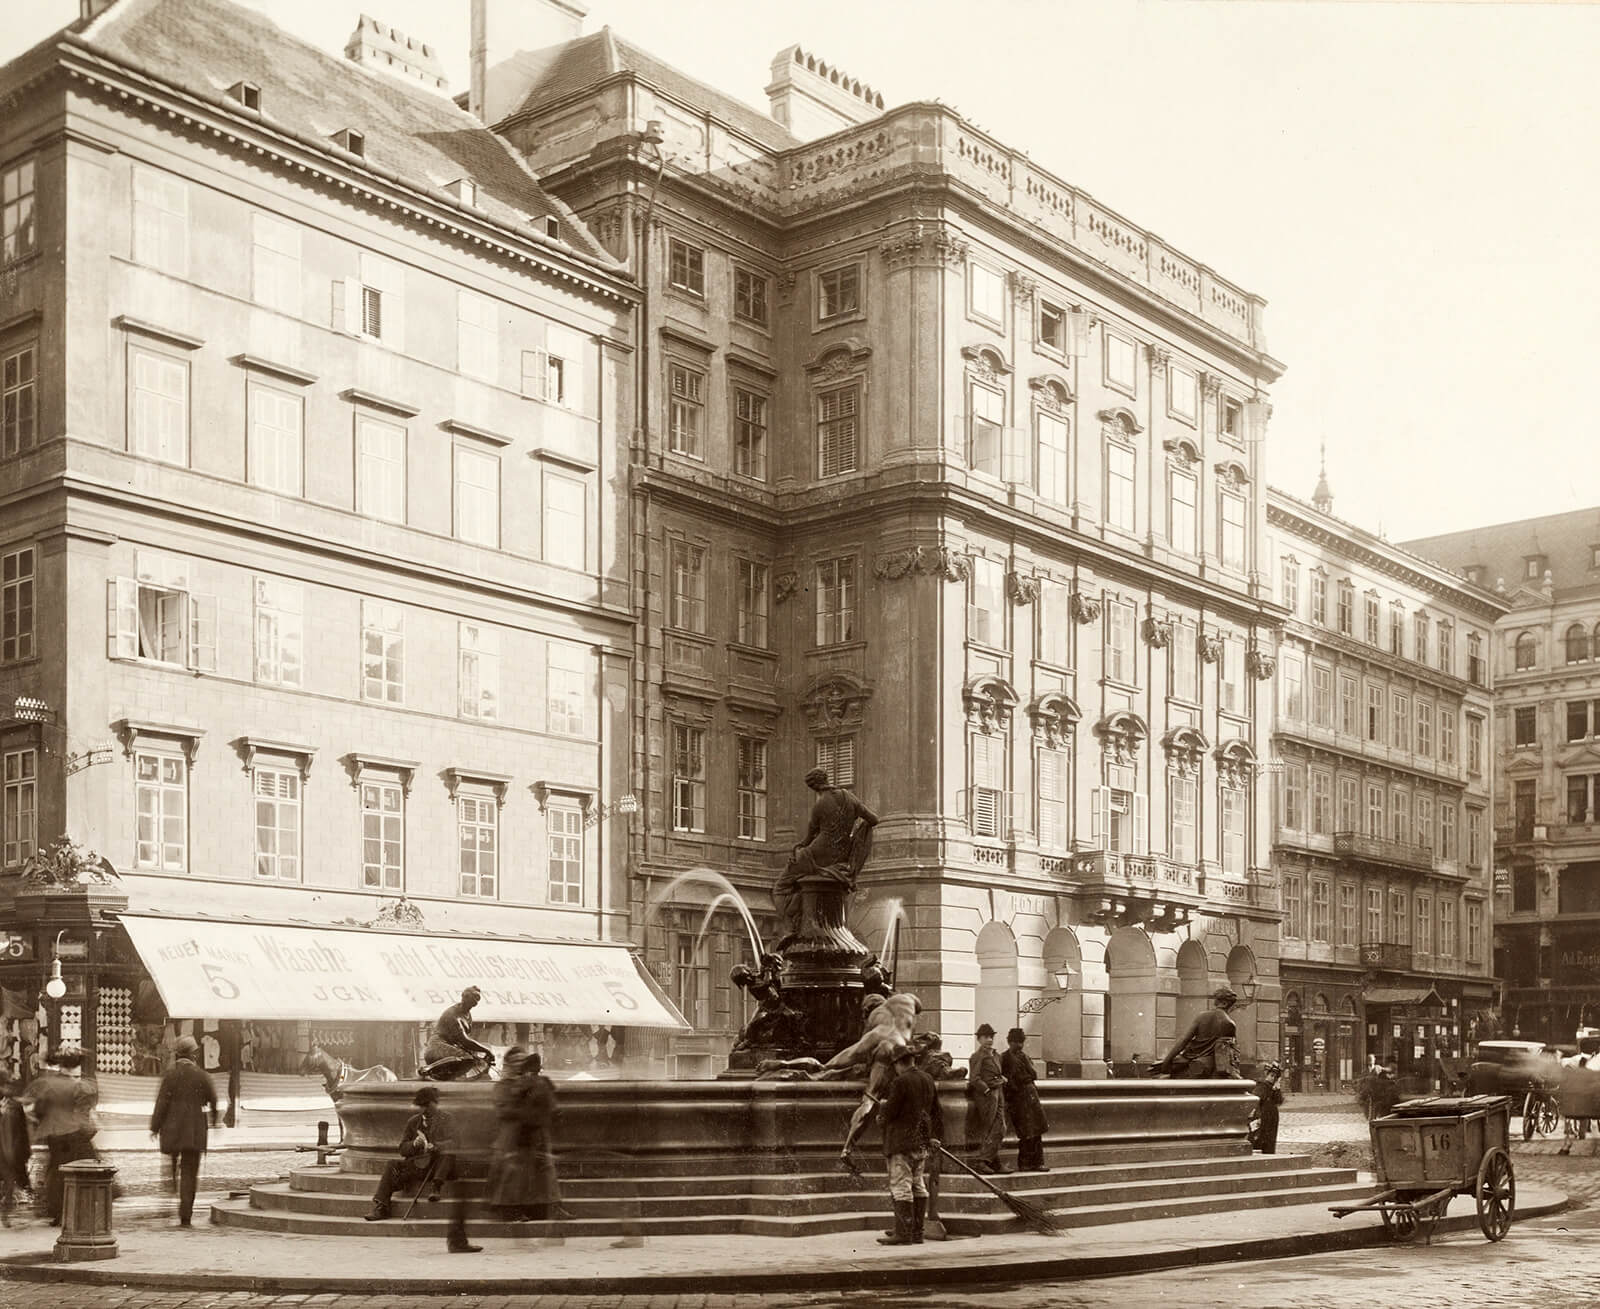 Großstadt-Alltag am Donnerbrunnen, im Hintergrund das Hotel Munsch (die ehemalige „Mehlgrube“), Fotografie (Mattkollodiumpapier) von Moriz Nähr, um 1899, Wien Museum 